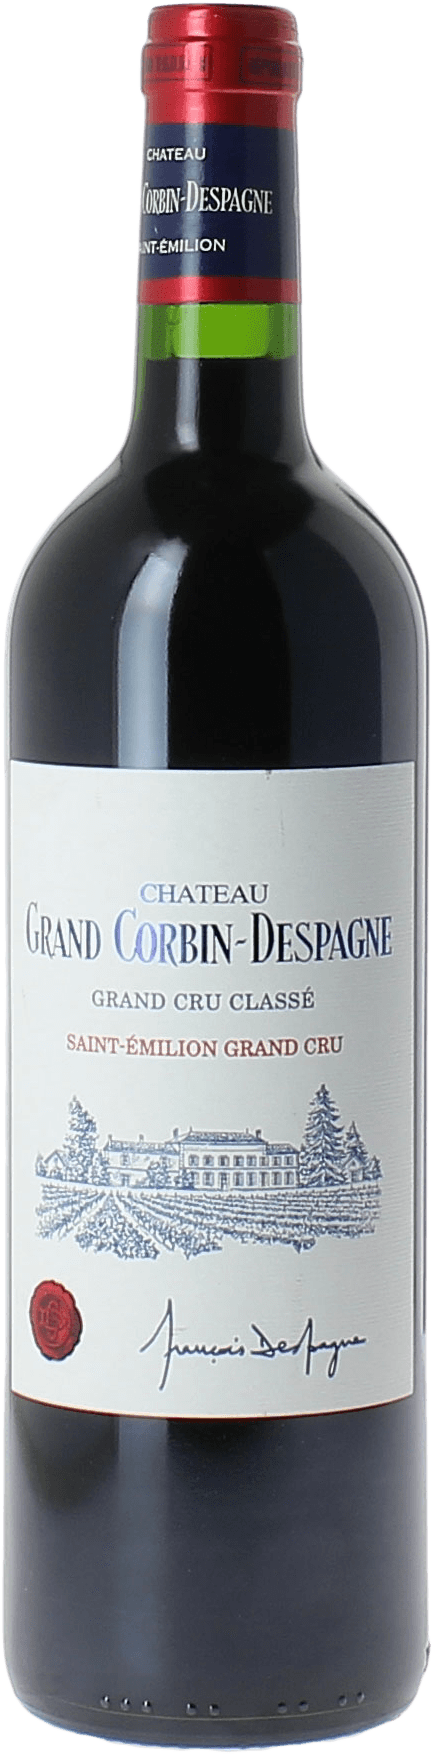 Grand corbin d'espagne 1999 Grand cru class Saint-Emilion, Bordeaux rouge